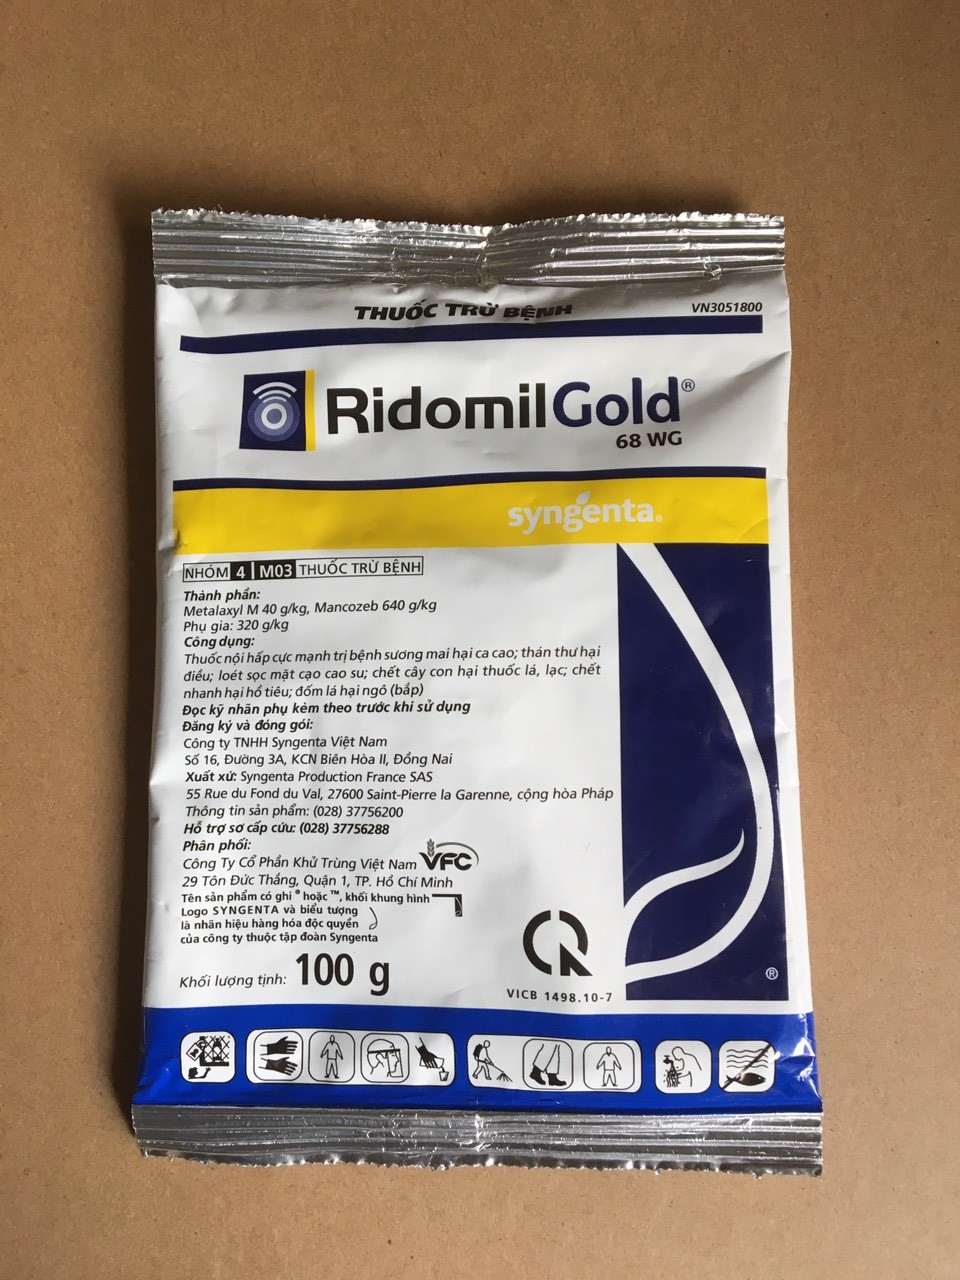 Hướng dẫn bà con cách sử dụng Ridomil Gold để trị bệnh thối nhũn